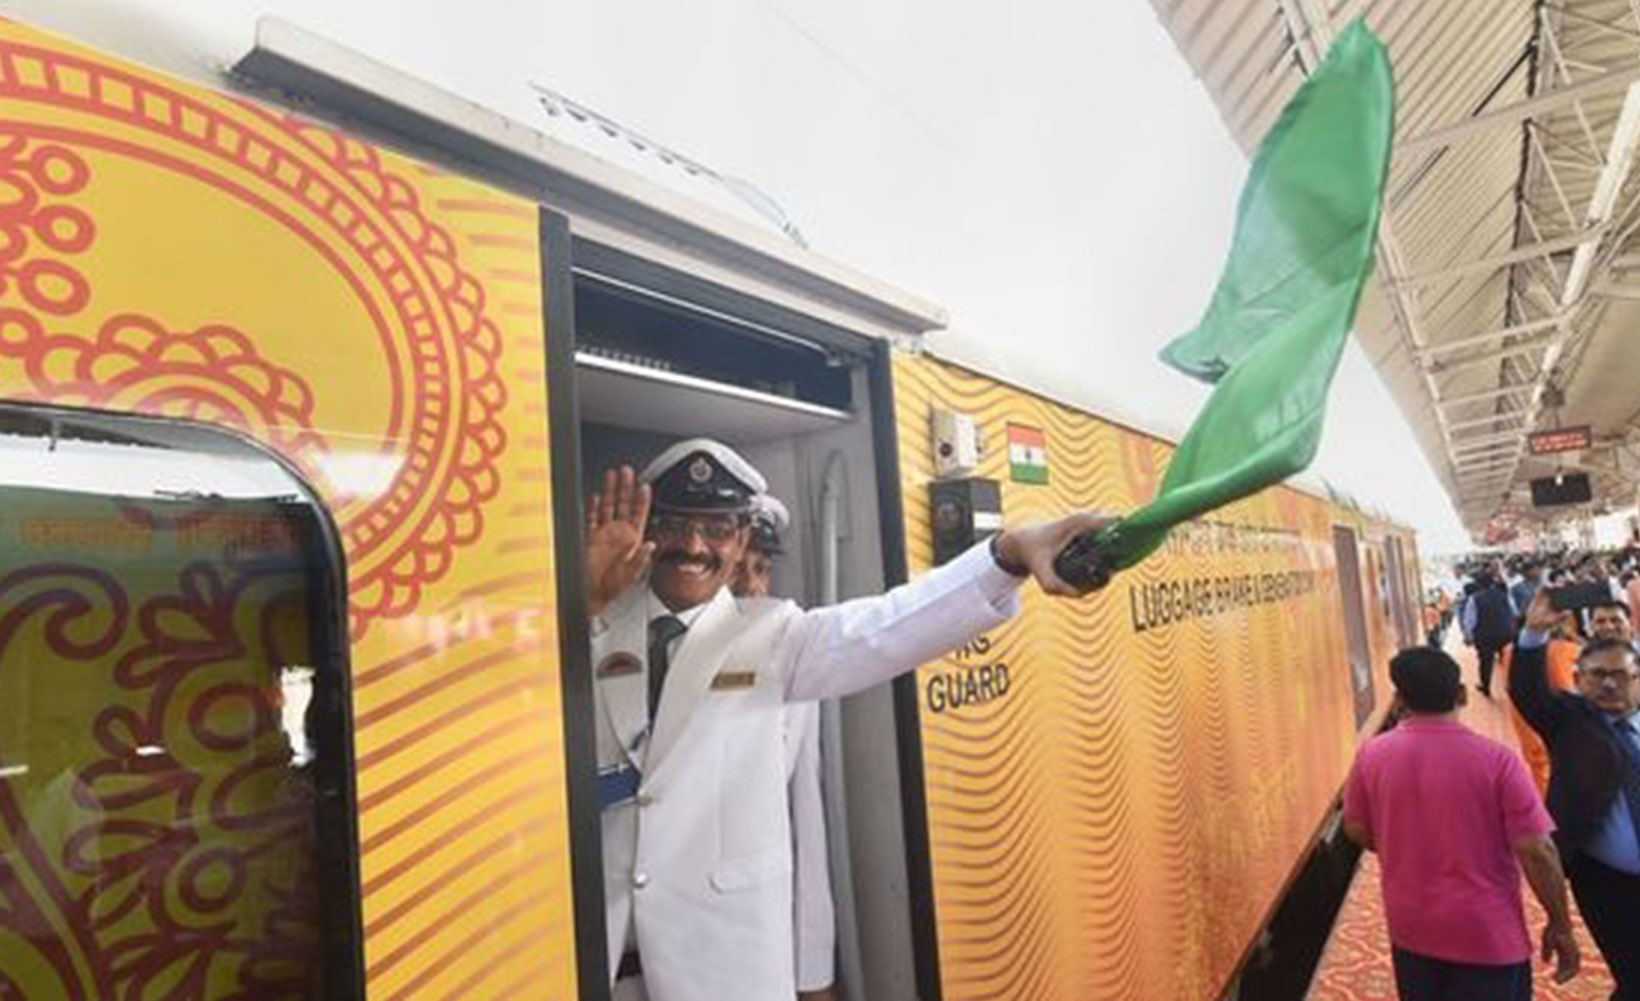 Tata, Adani, Hyundai fazem fila para gerir comboios privados nos carris dos caminhos-de-ferro indianos